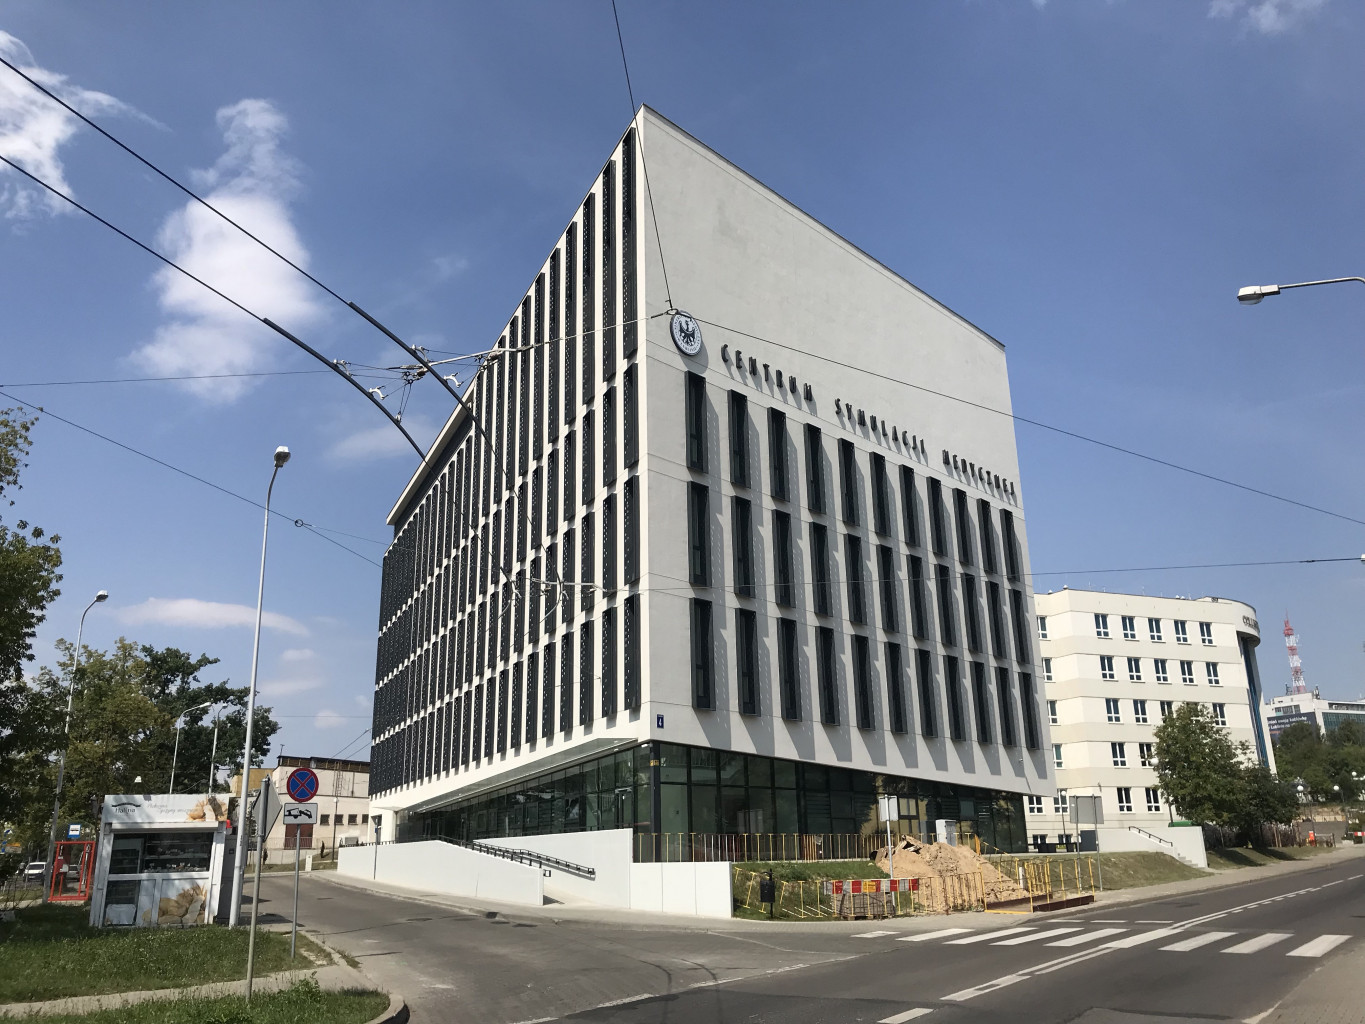 jeden z budynków kampusu Uniwersytetu Medycznego w Lublinie, nowoczesny, 5 kondygnacji, widok z dołu, widać też ulicę i wjazd do parkingu